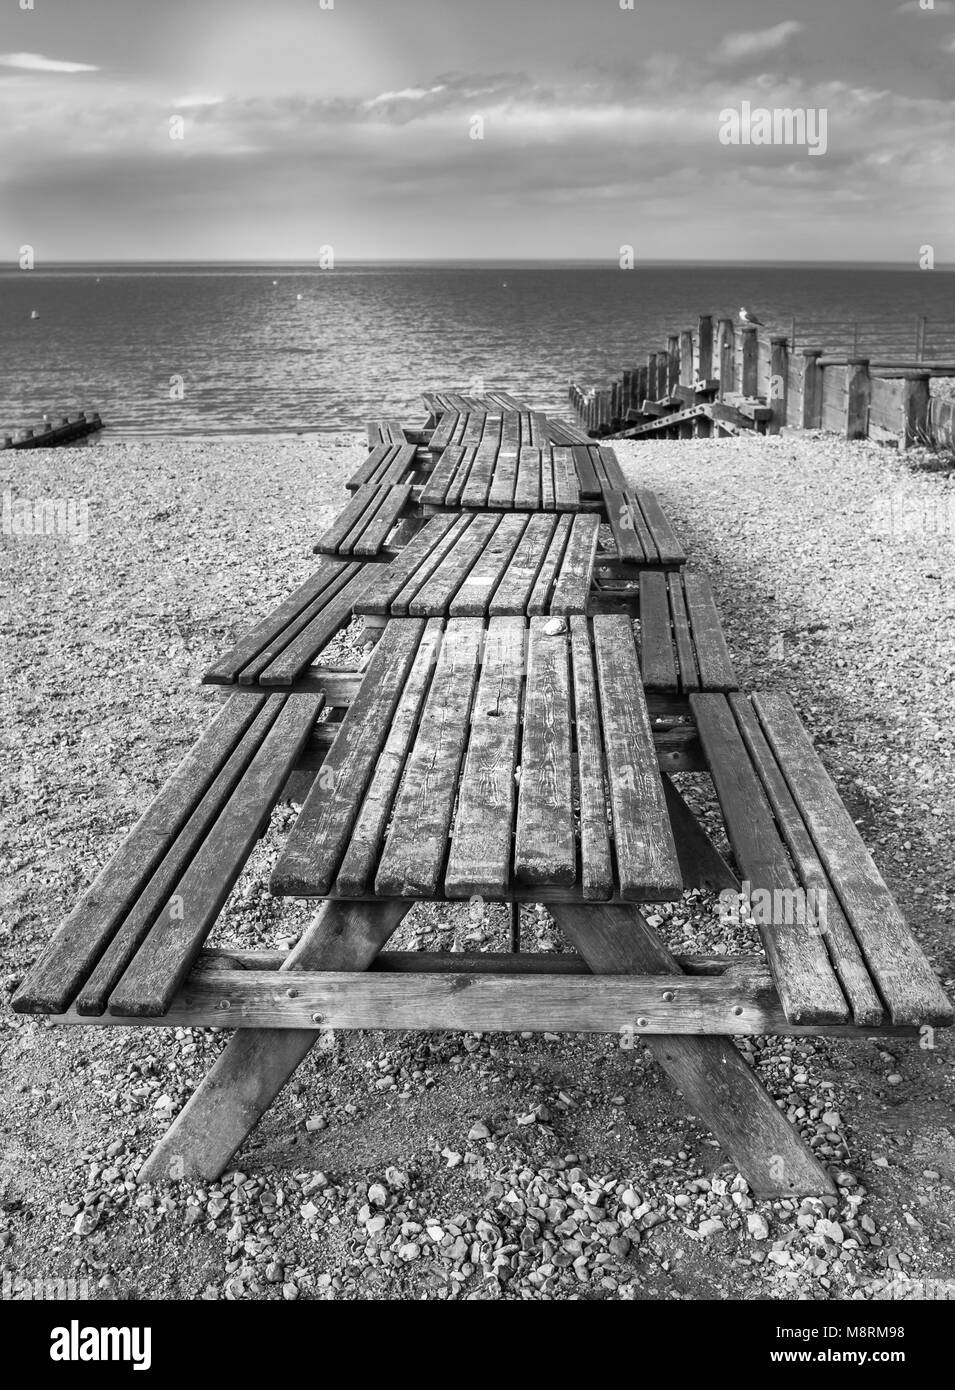 Une rangée de tables en bois banc de pique-nique sur la plage de Margate, Kent, UK, avec bois épis et une vue sur l'horizon sur la mer en noir et blanc Banque D'Images